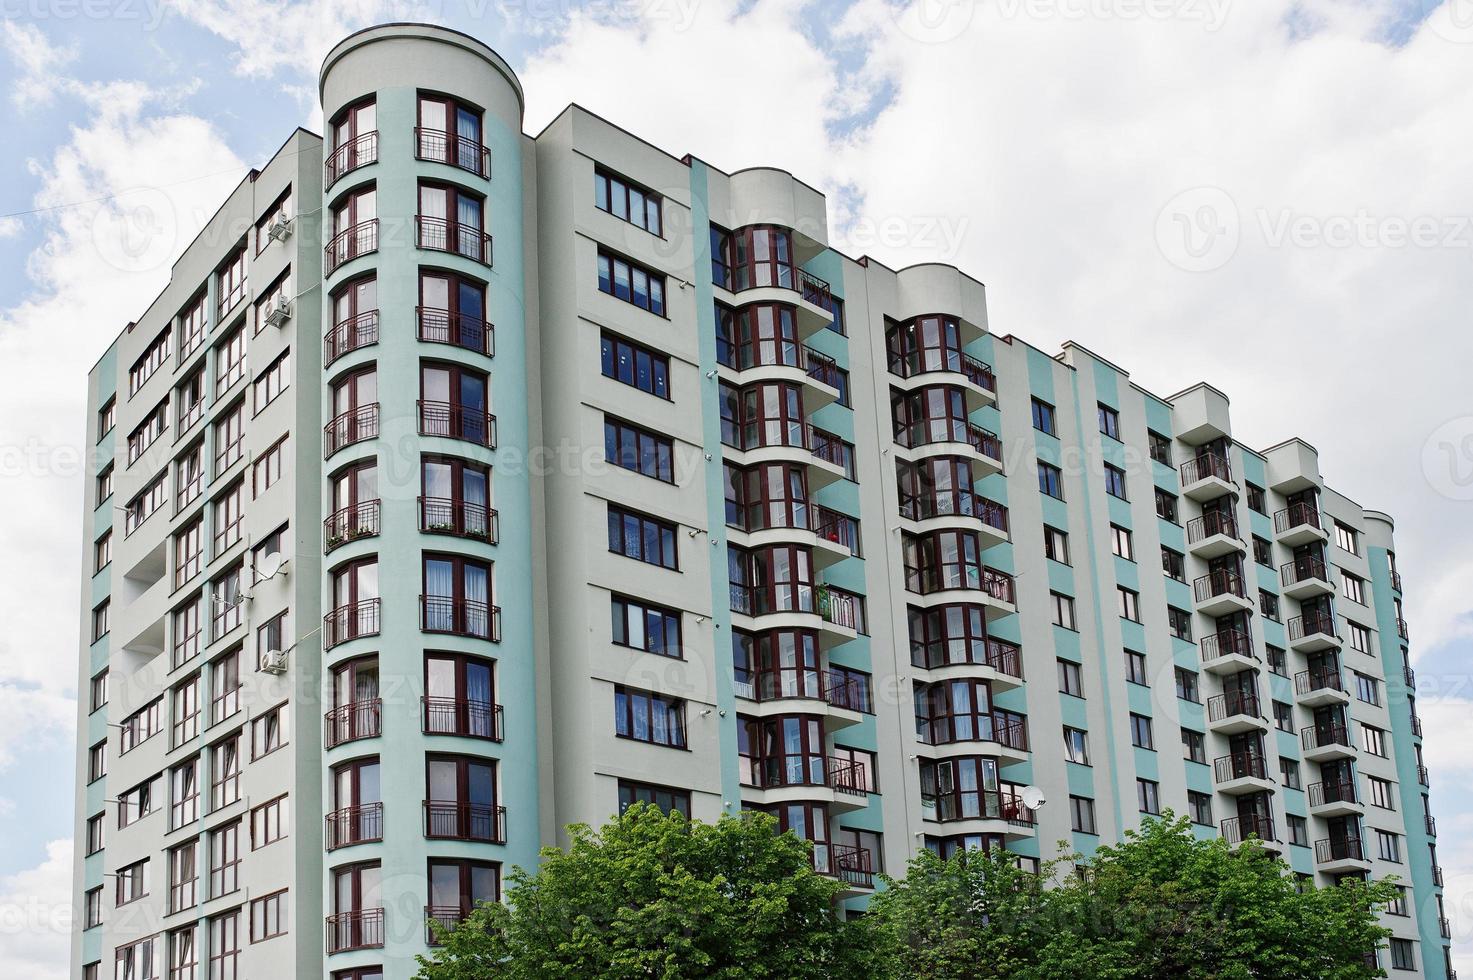 varanda da nova casa de construção residencial de vários andares turquesa moderna em área residencial no céu azul ensolarado. foto